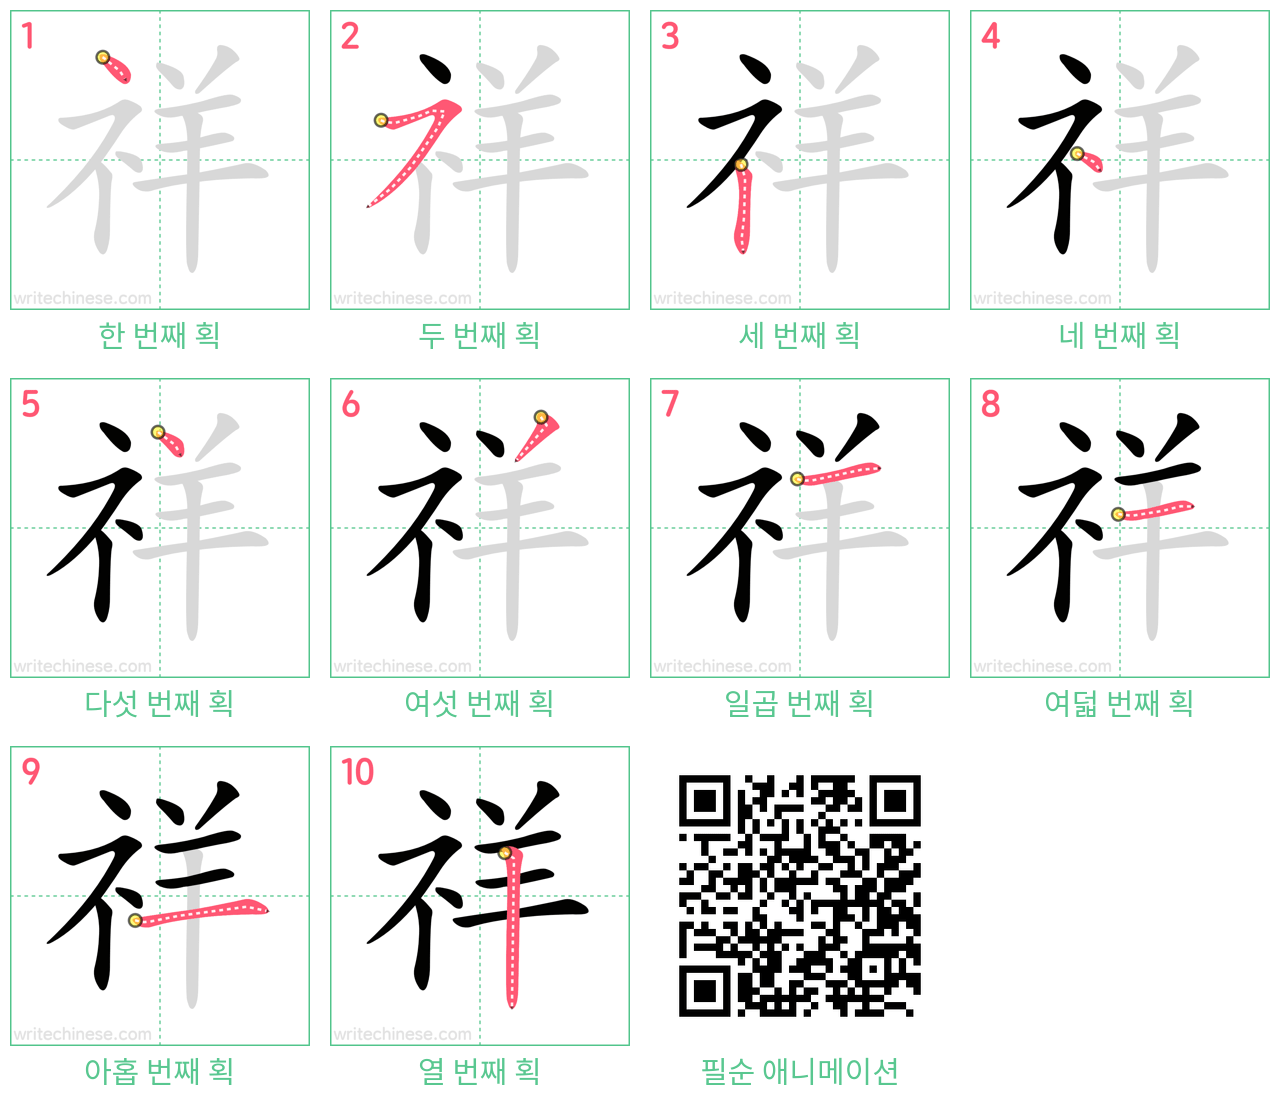 祥 step-by-step stroke order diagrams